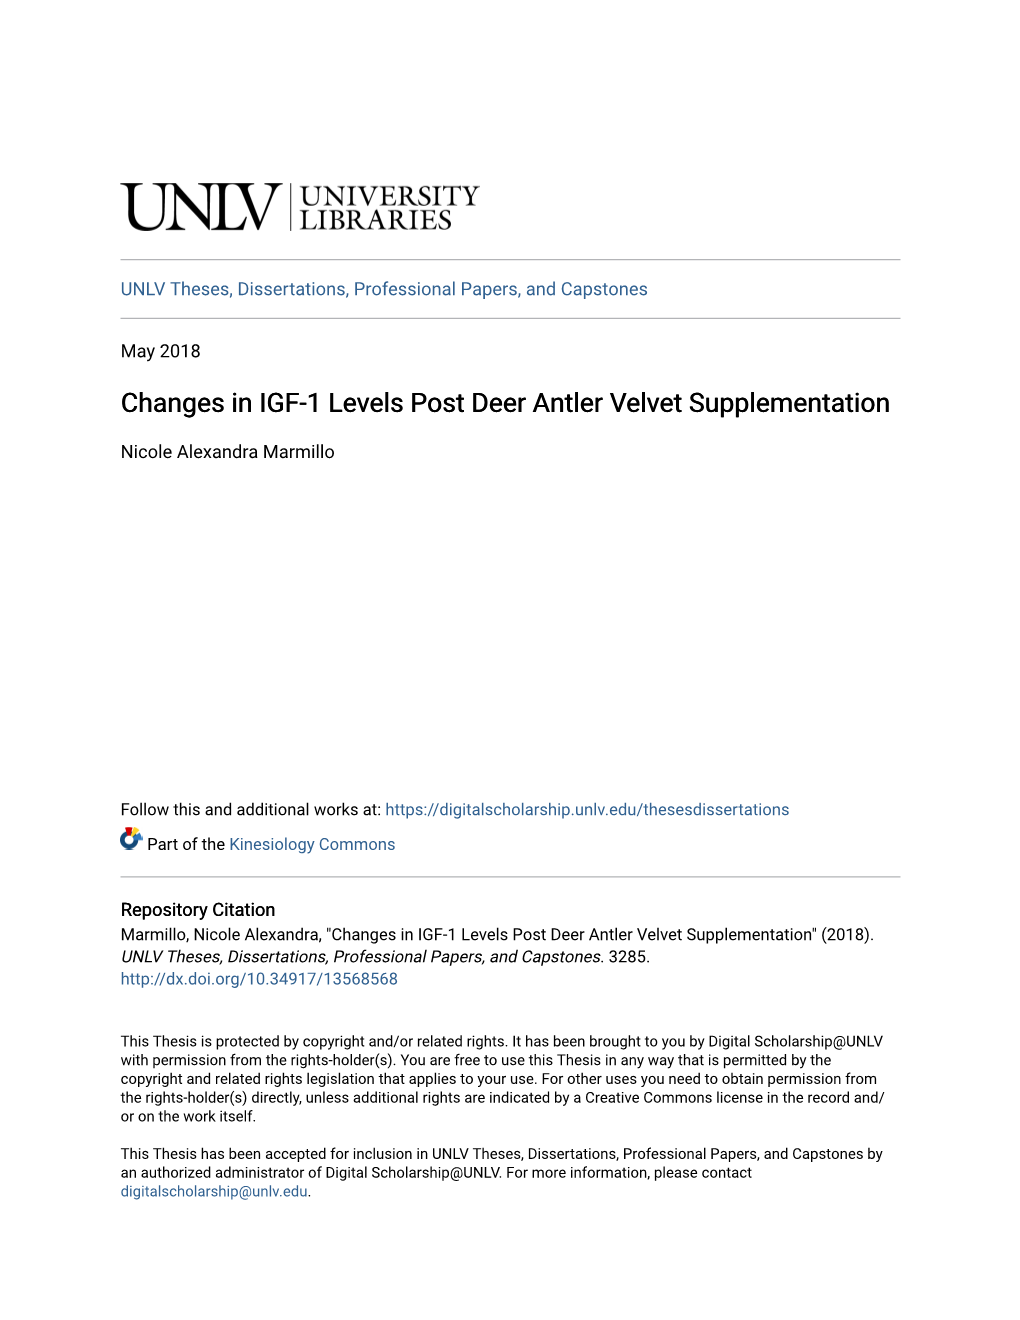 Changes in IGF-1 Levels Post Deer Antler Velvet Supplementation